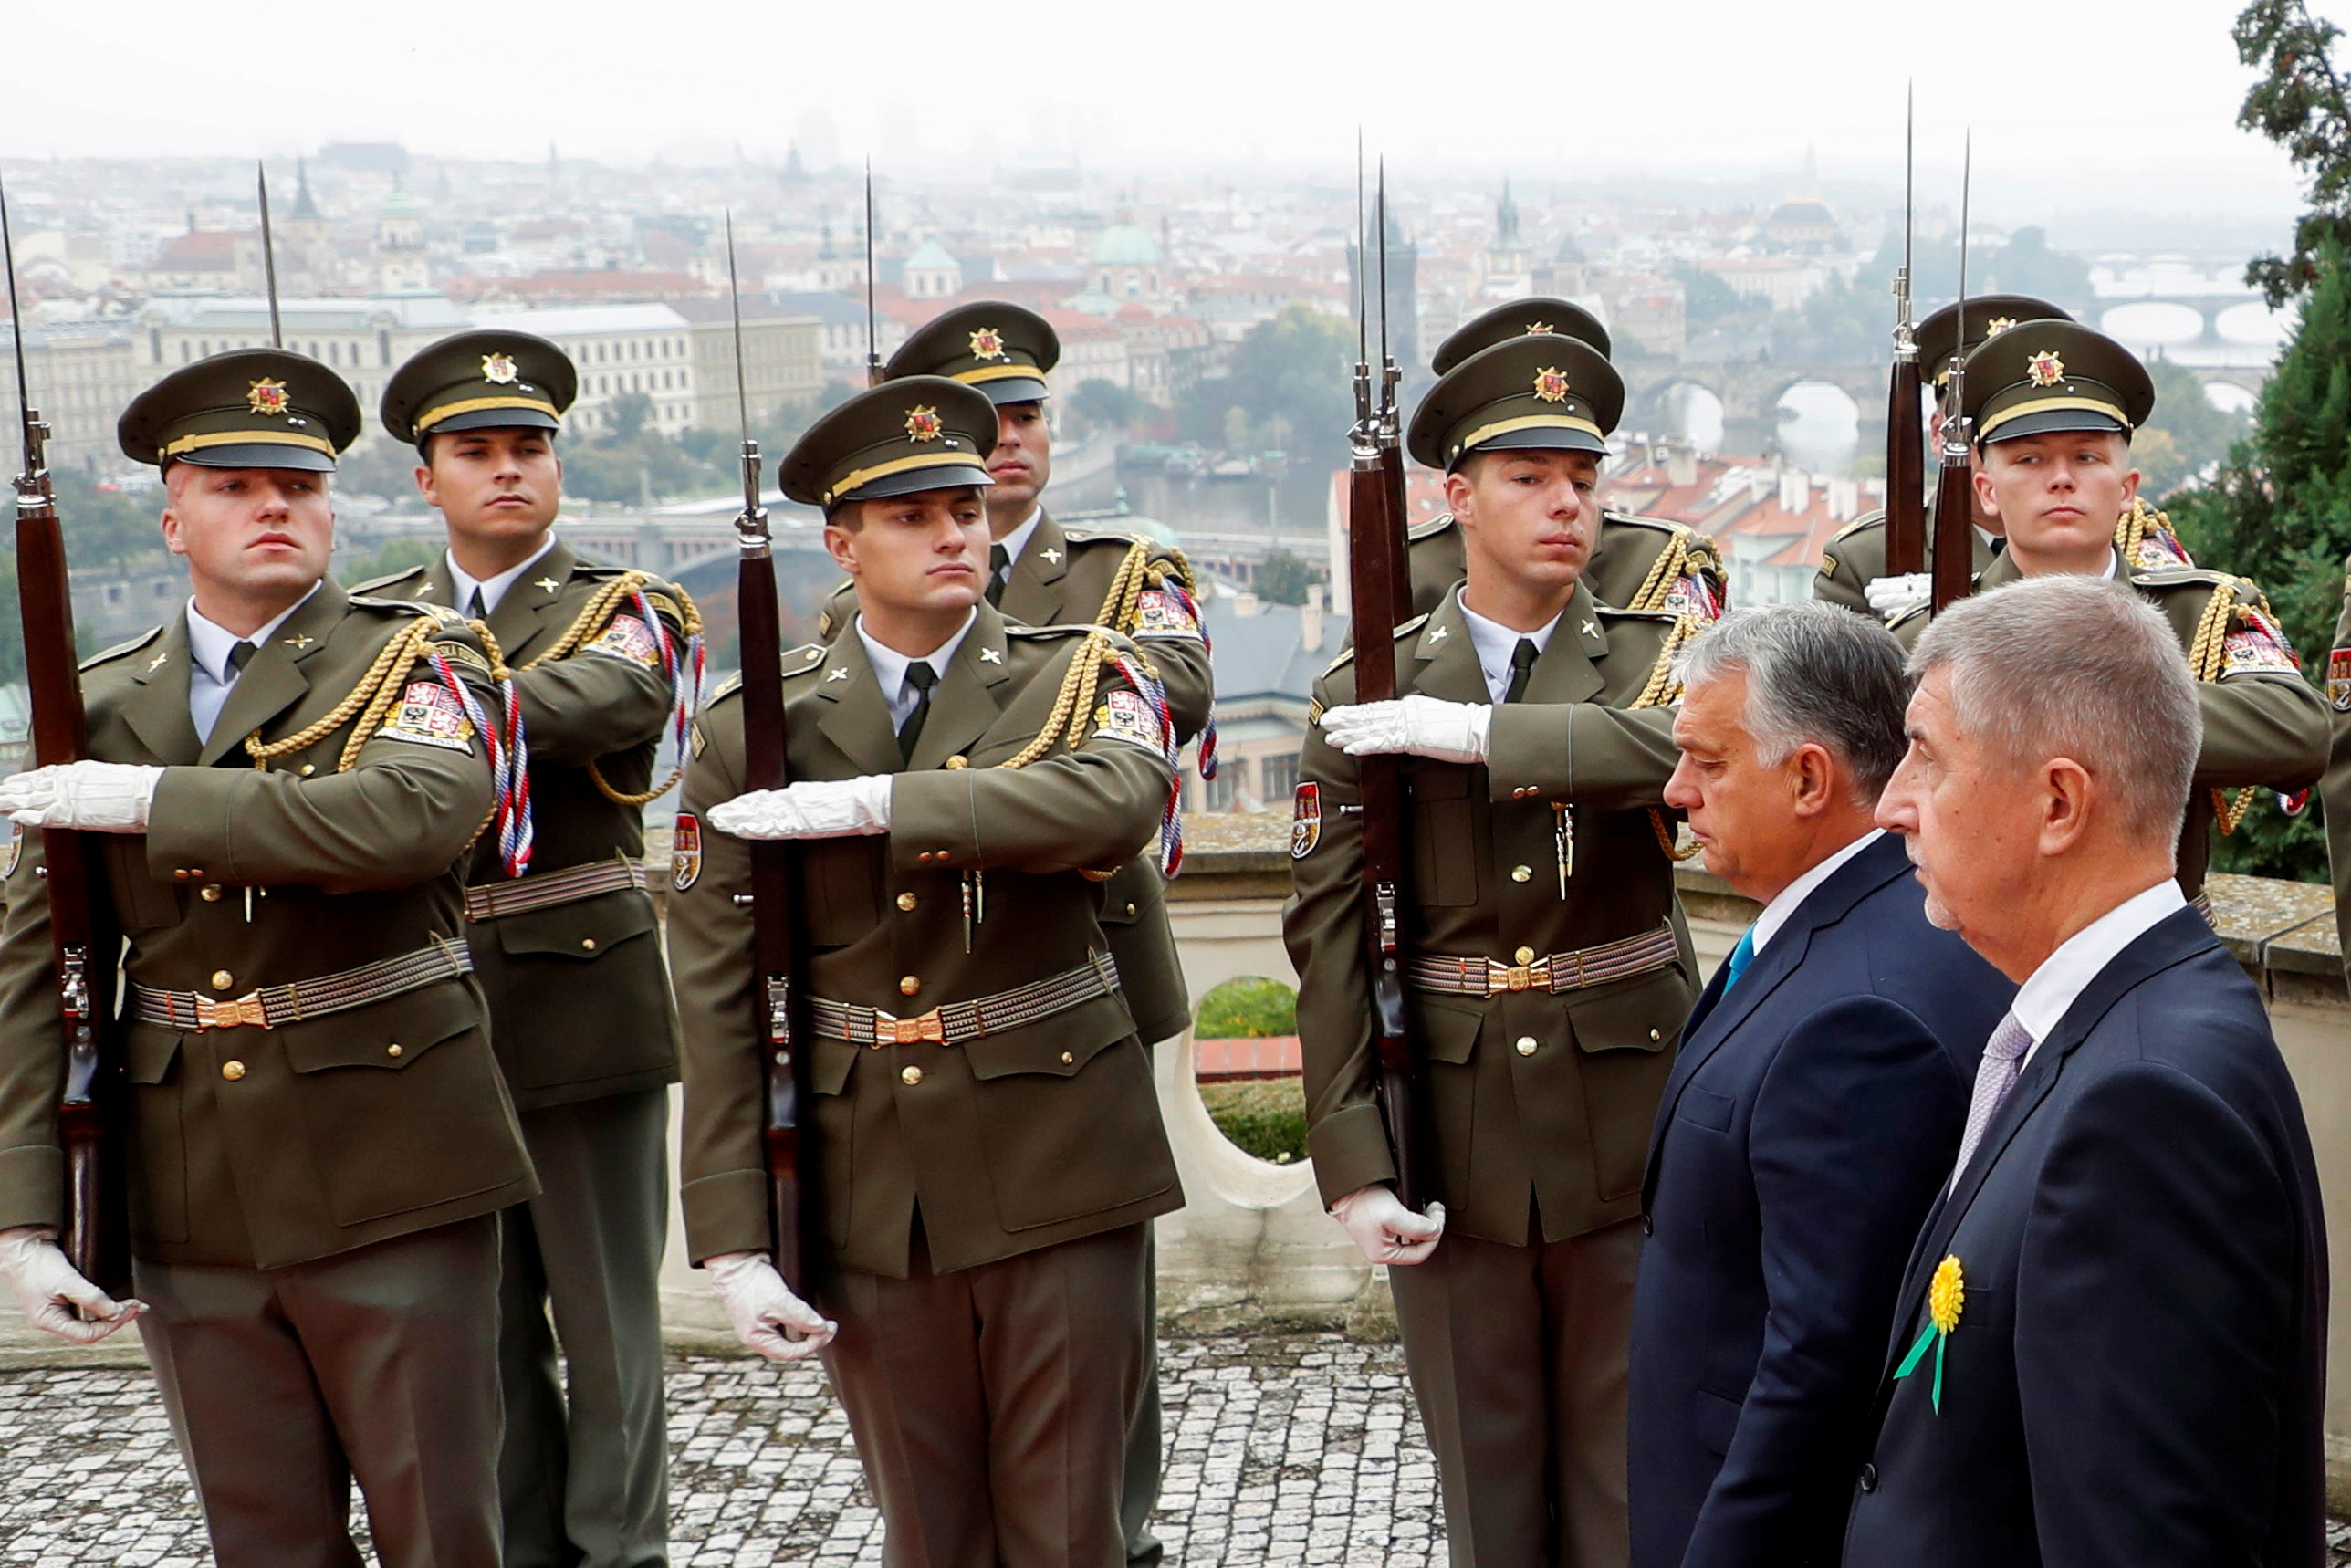 Premier Czech Andrej Babis i premier Węgier Viktor Orban przeglądają gwardię honorową podczas ceremonii powitania w willi Kramara w Pradze, Czechy, 29 września 2021 r. REUTERS / David W Cerny